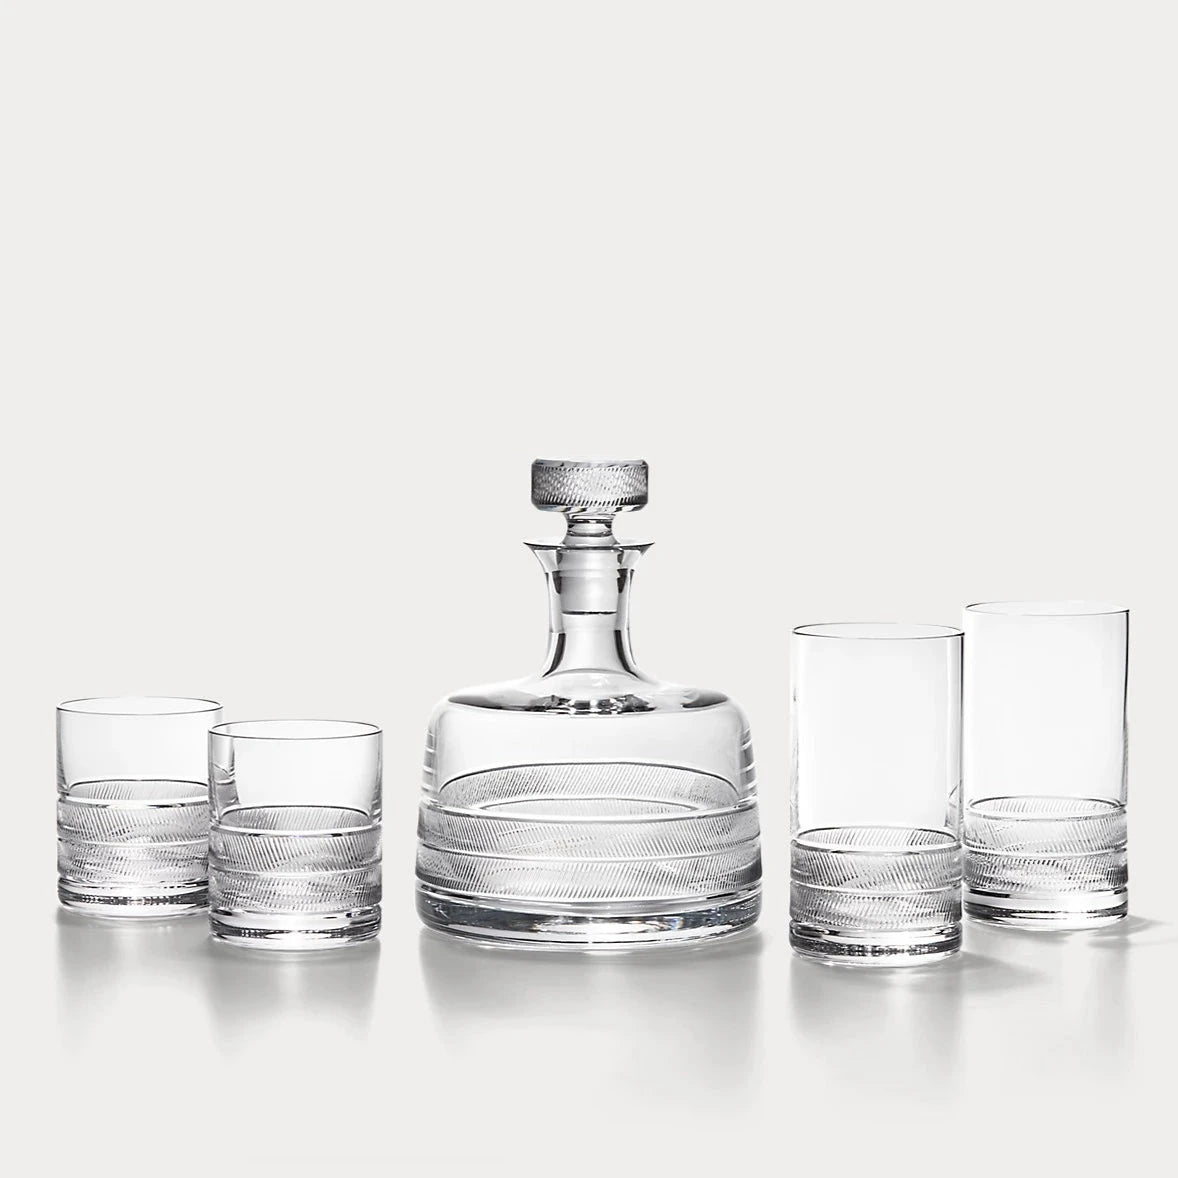 Remy Gin-Gläser-Set